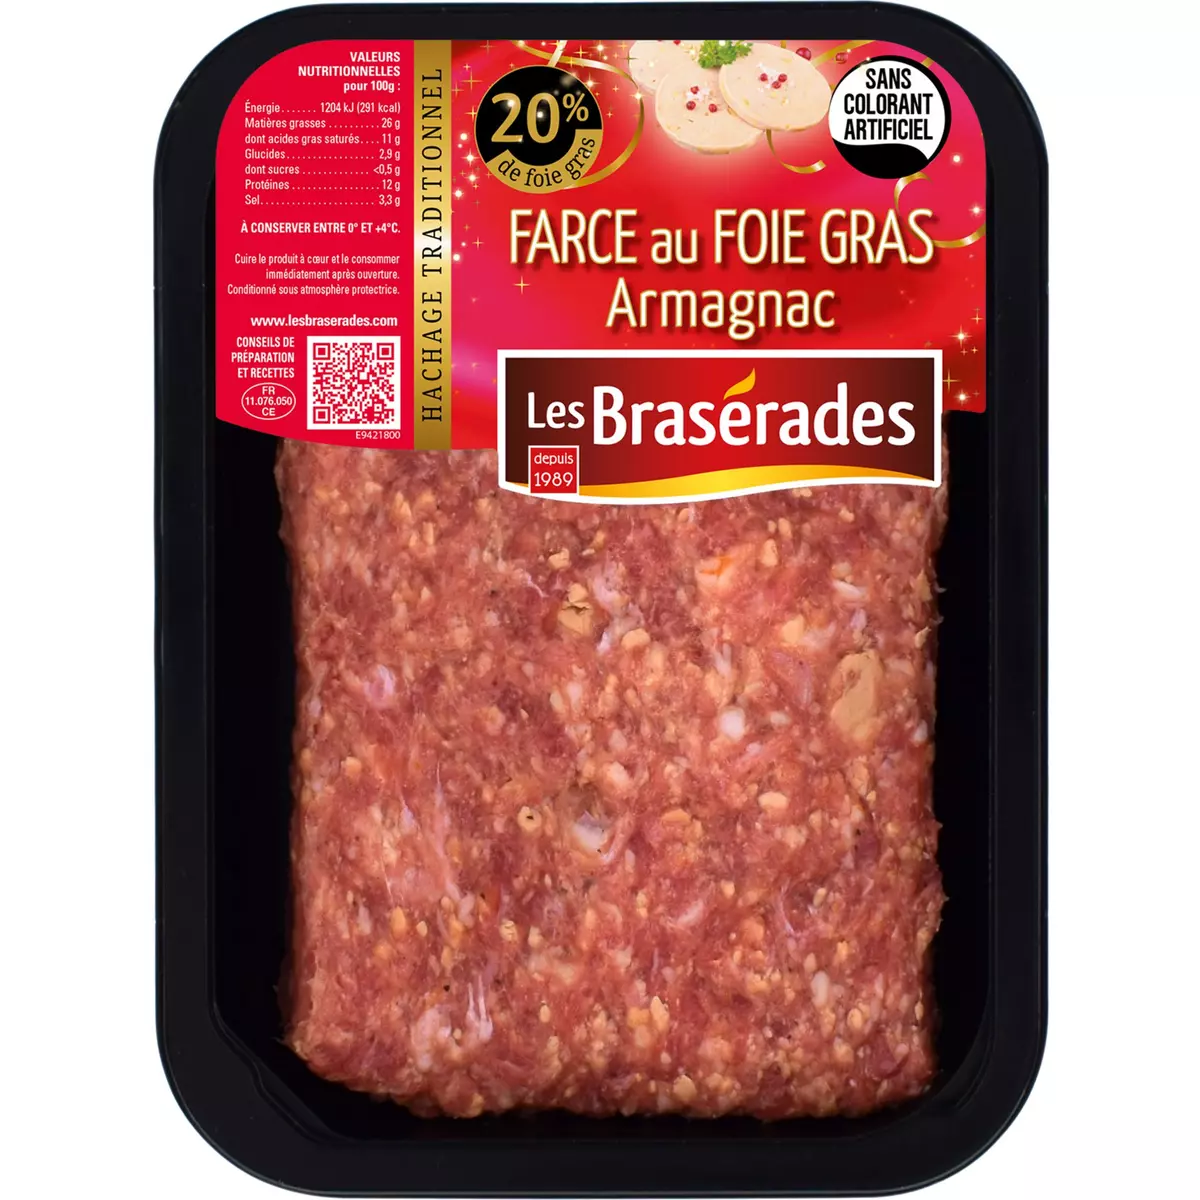 LES BRASERADES Farce au foie gras et armagnac 400g